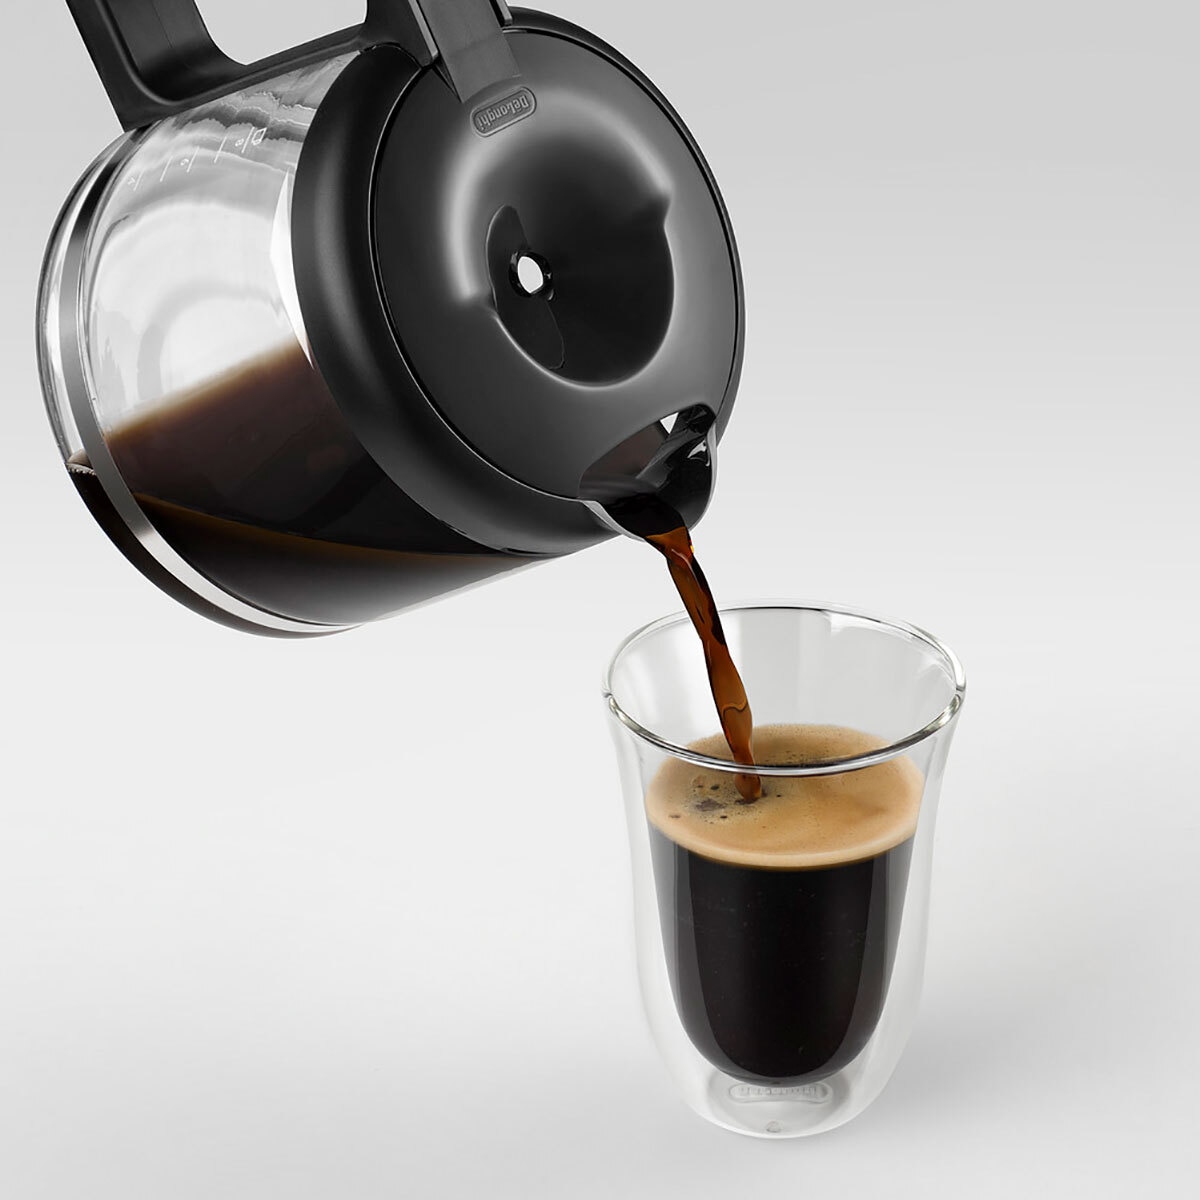  De'Longhi Combinación de cafetera y máquina de café especial de  todo en uno + Máquina de leche ajustable avanzada para Cappuccino & Latte +  Cafetería de vidrio 10 taza, com532m 